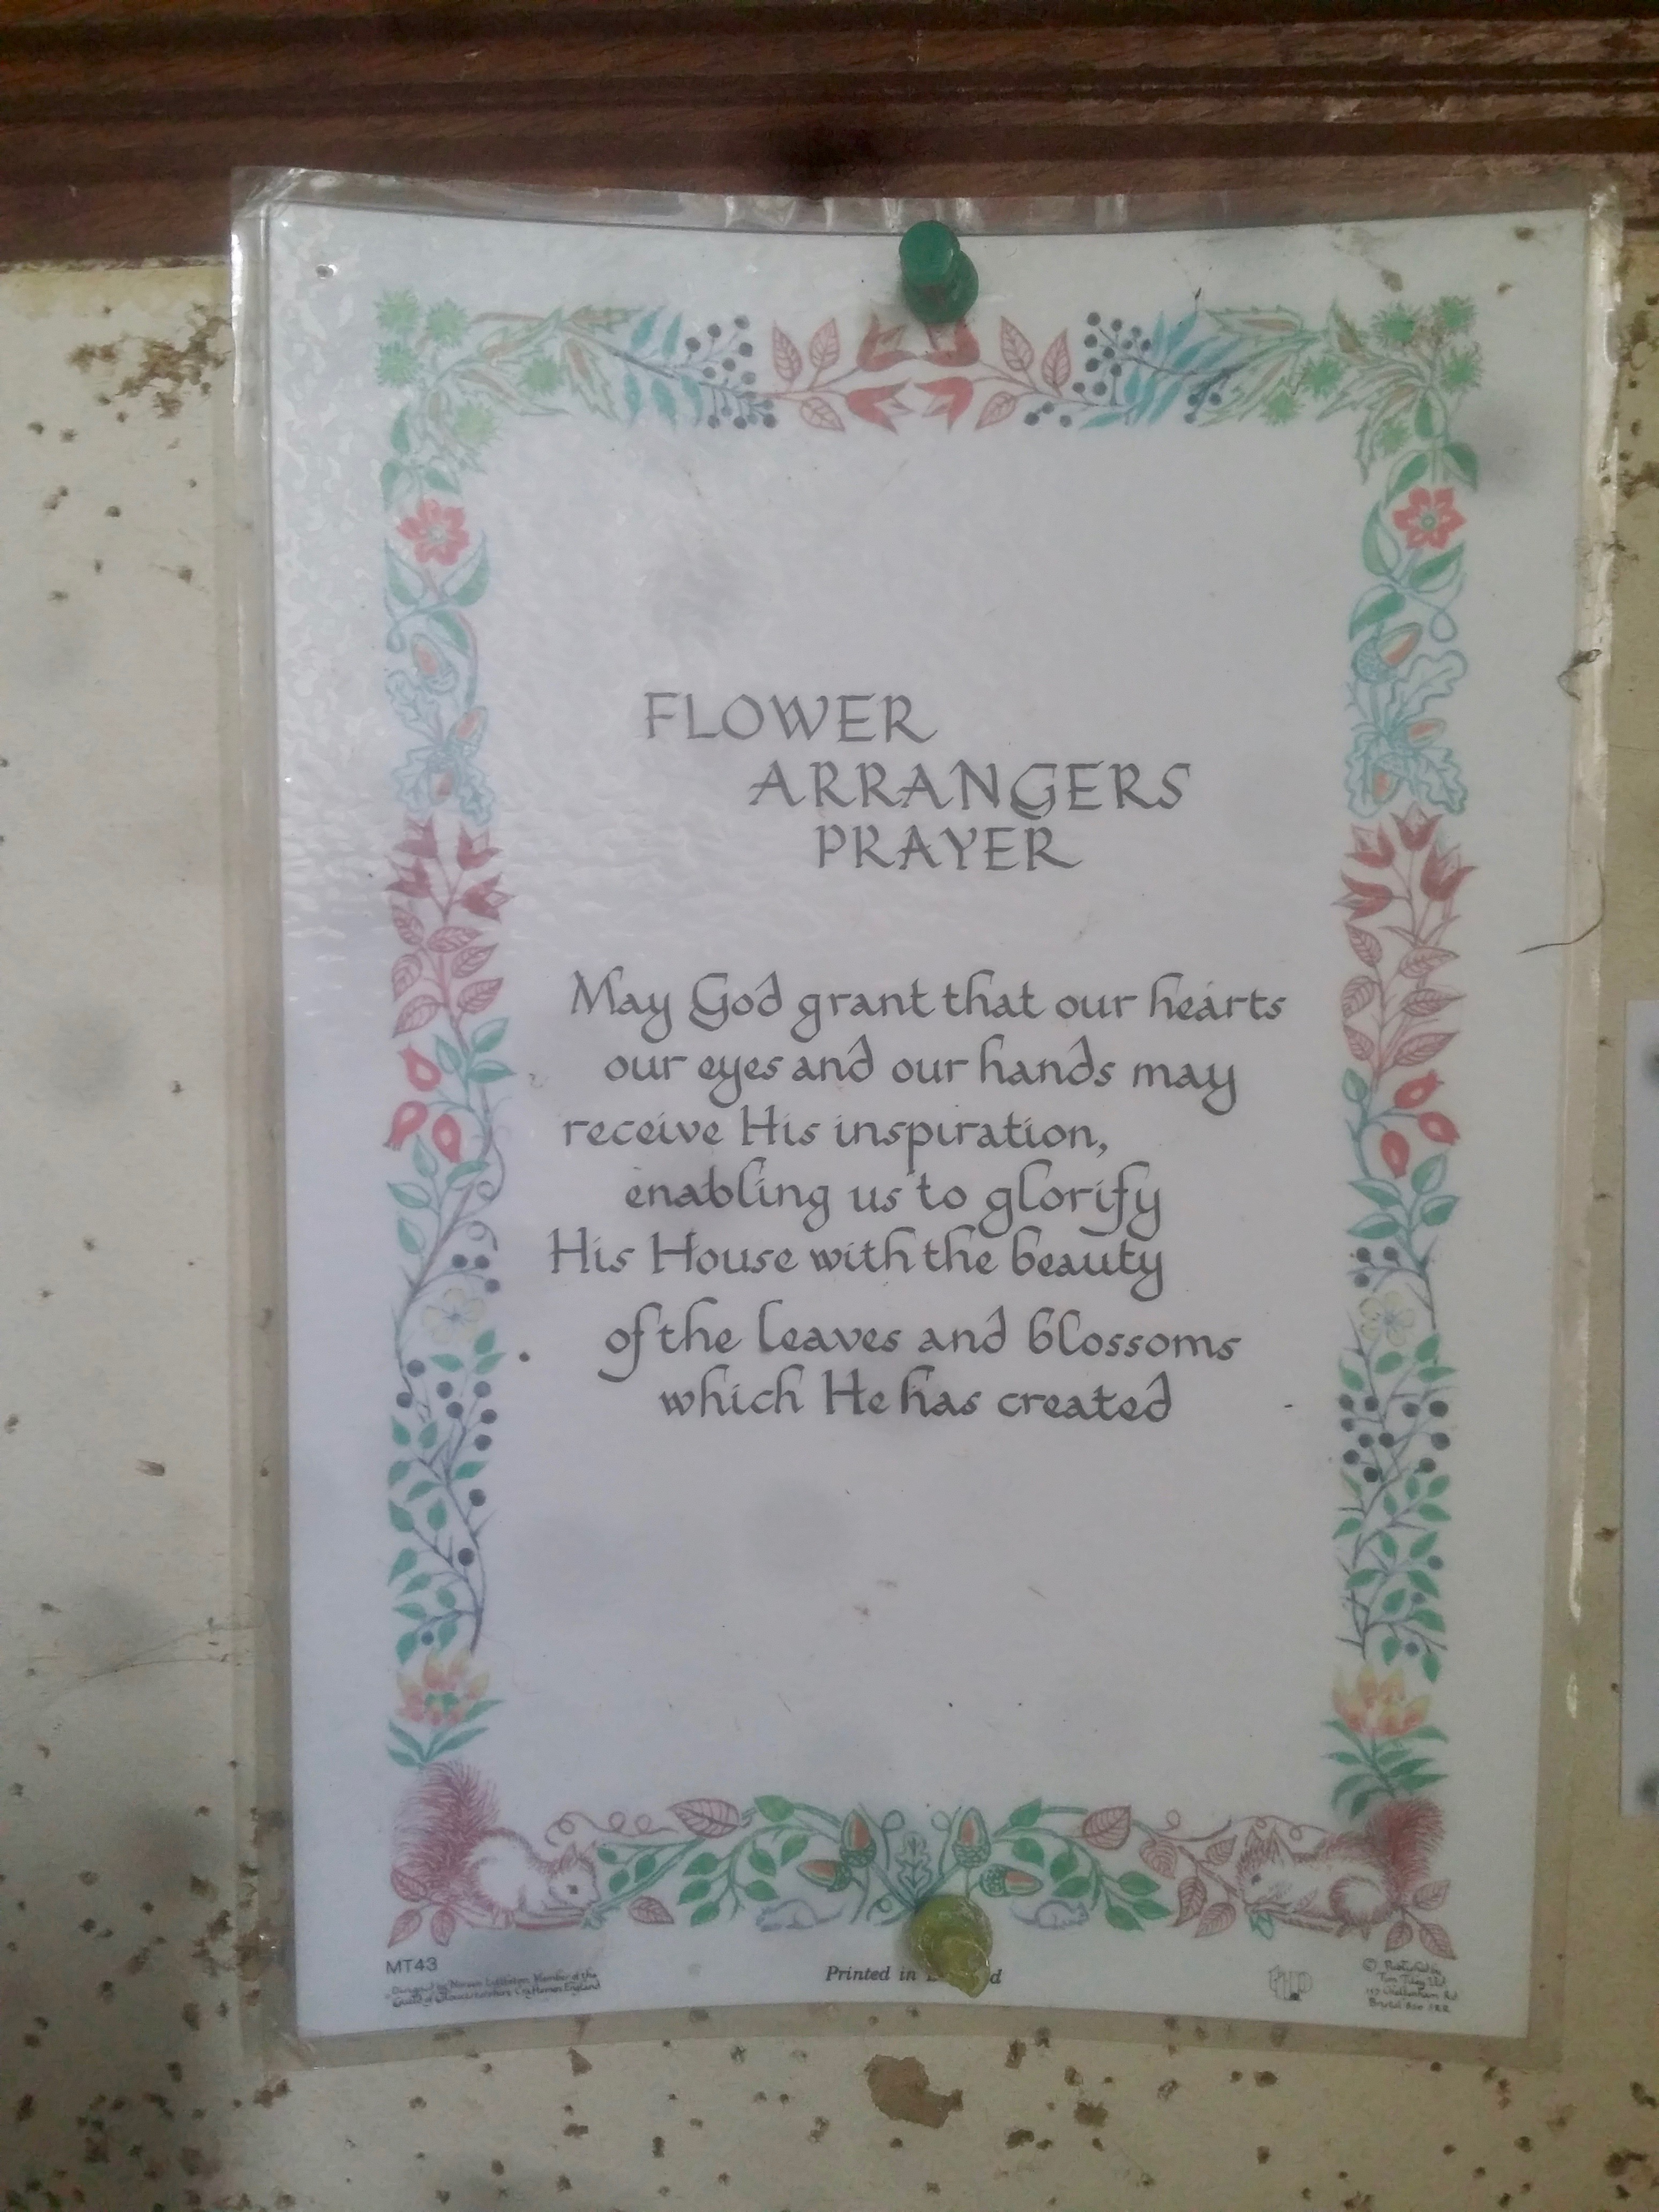 The flower arranger's prayer.